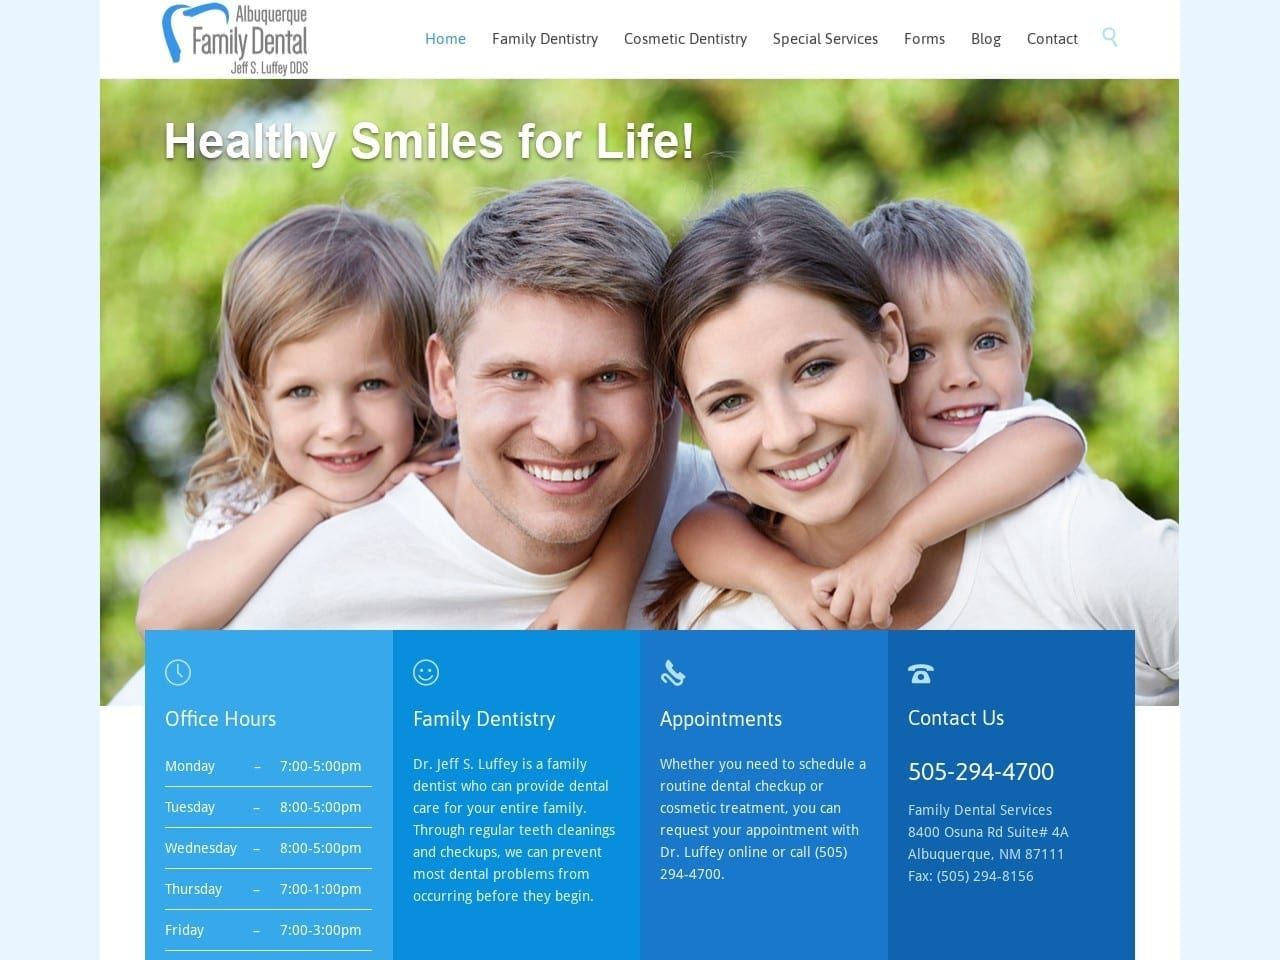 Albuquerque Family Dental Website Screenshot from abqfamilydental.com